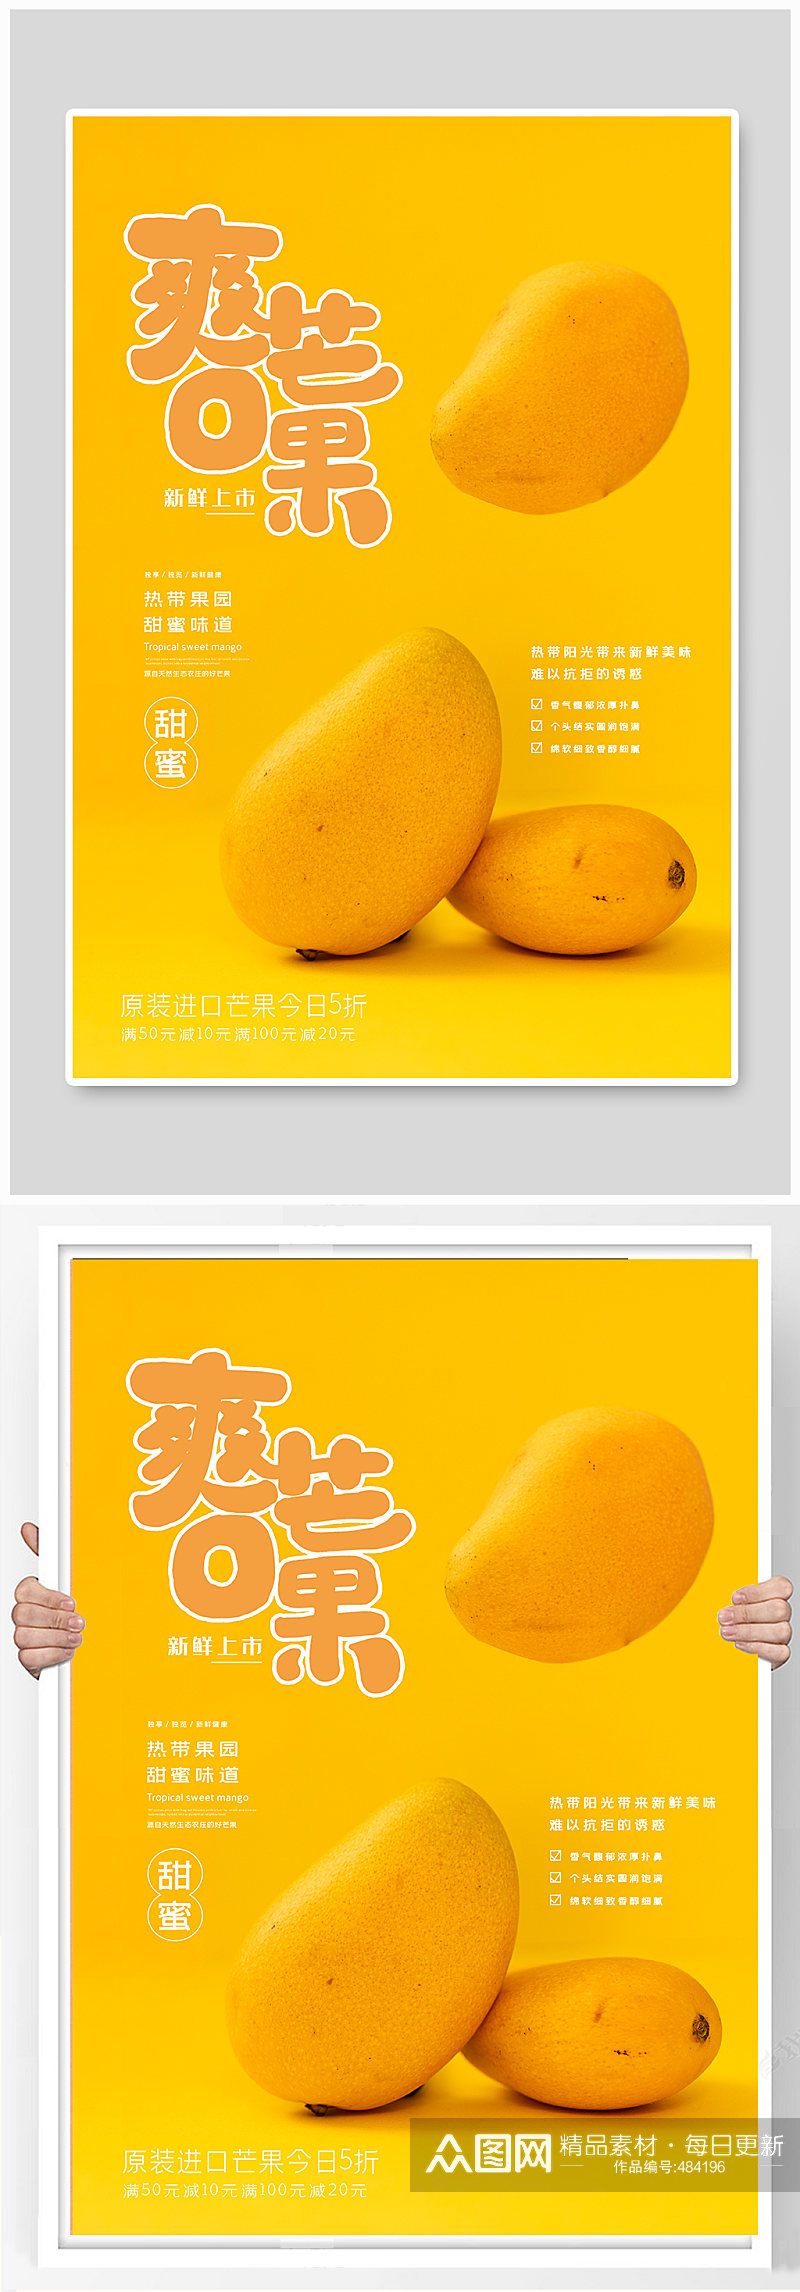 芒果新鲜水果美食宣传海报素材